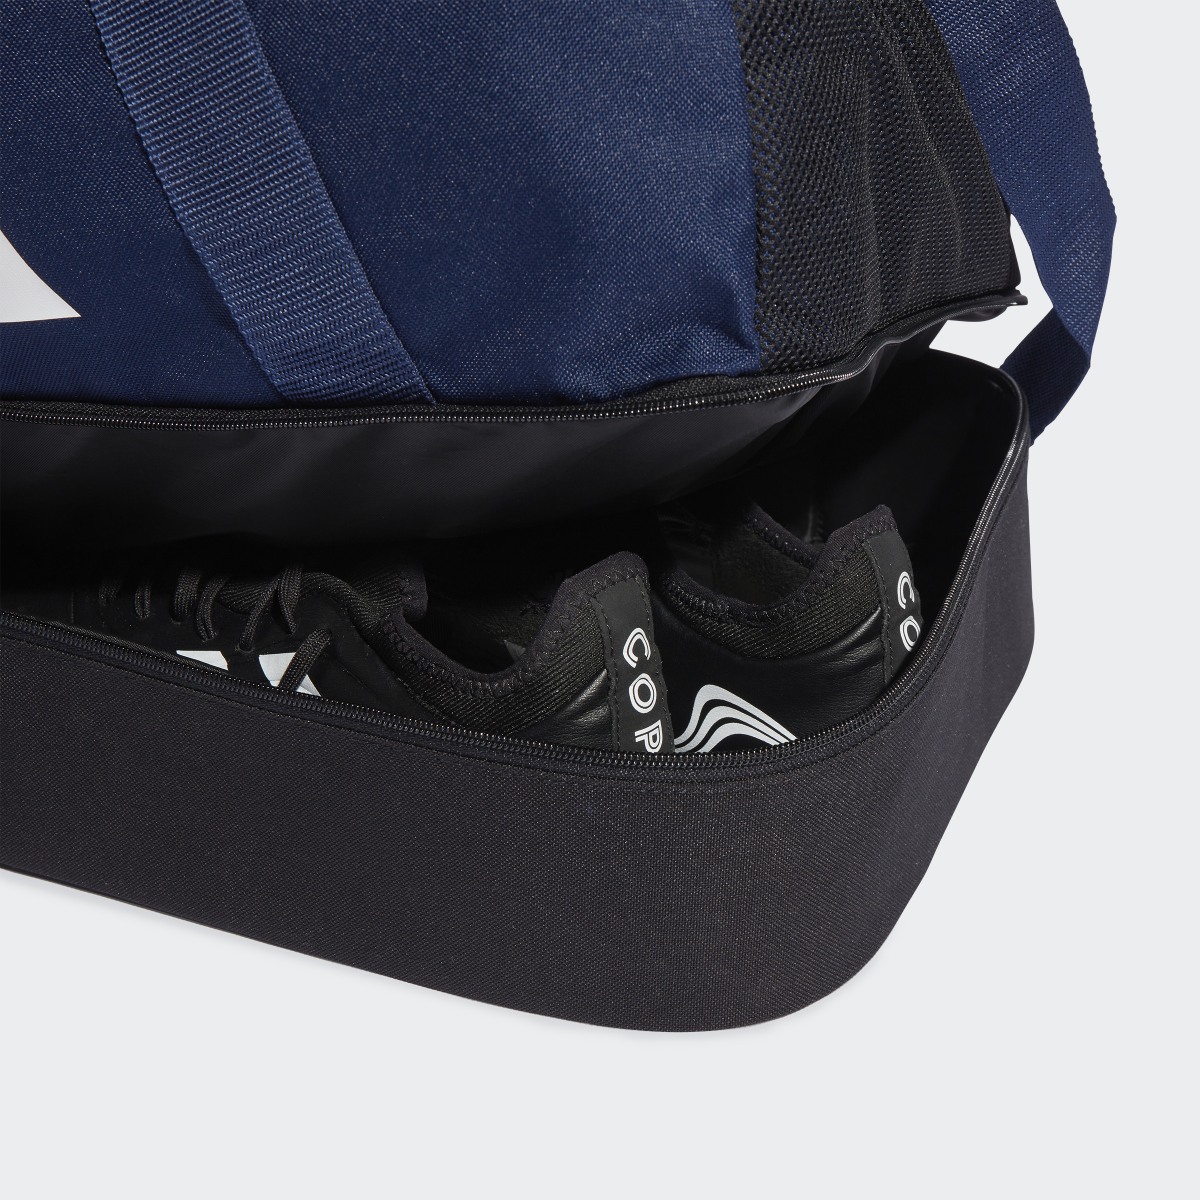 Adidas Tiro League Duffelbag S. 7